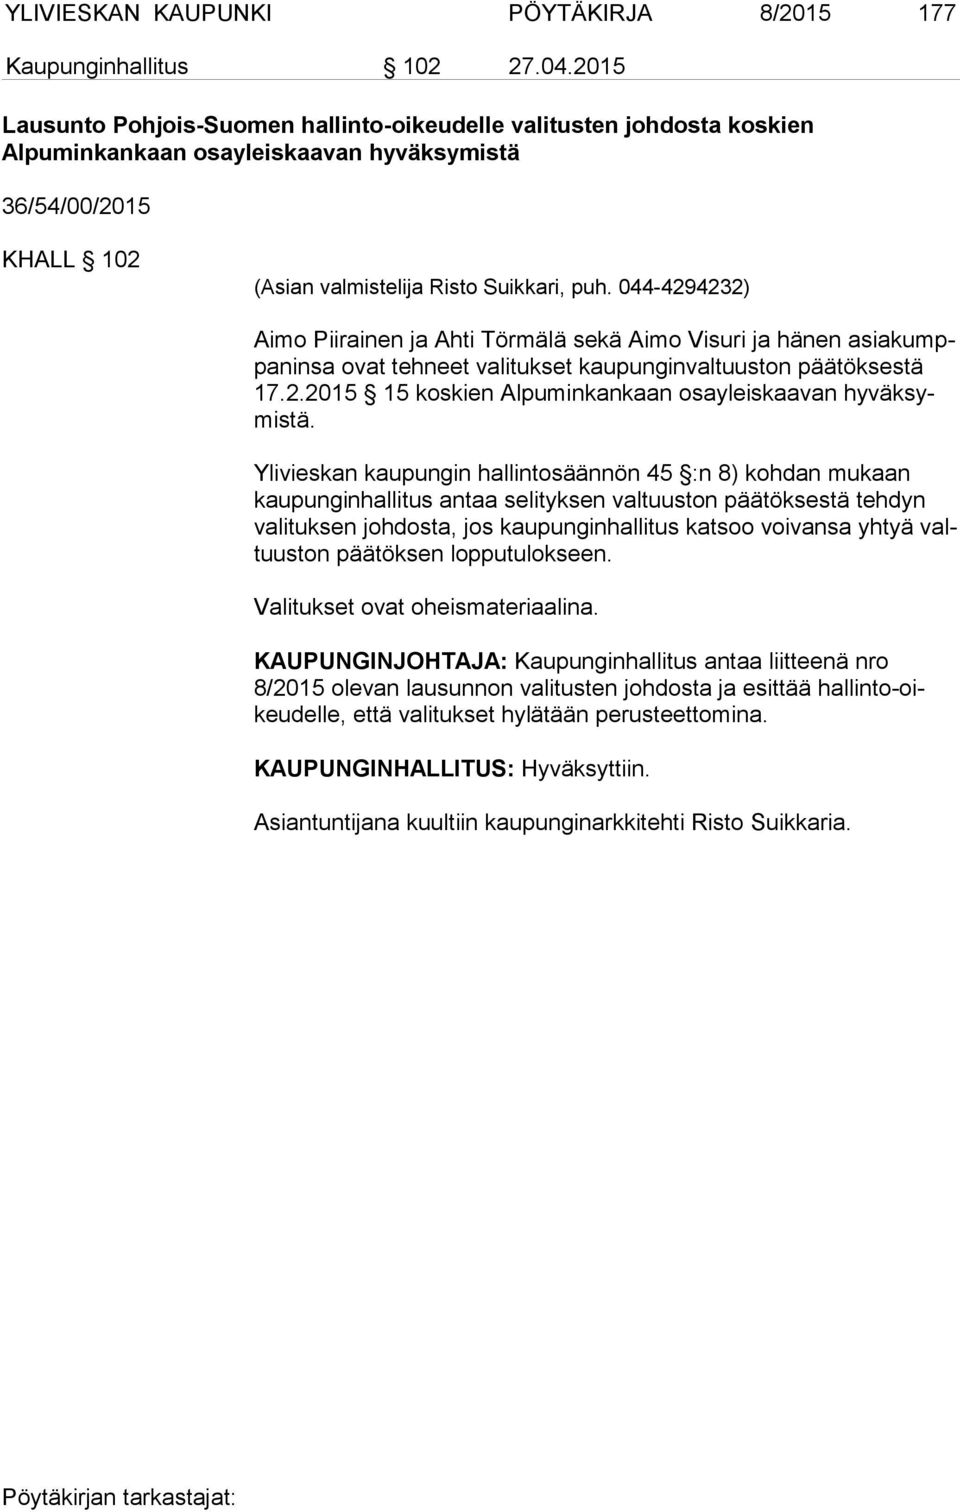 044-4294232) Aimo Piirainen ja Ahti Törmälä sekä Aimo Visuri ja hänen asia kumppa nin sa ovat tehneet valitukset kaupunginvaltuuston päätöksestä 17.2.2015 15 koskien Alpuminkankaan osayleiskaavan hy väk symis tä.